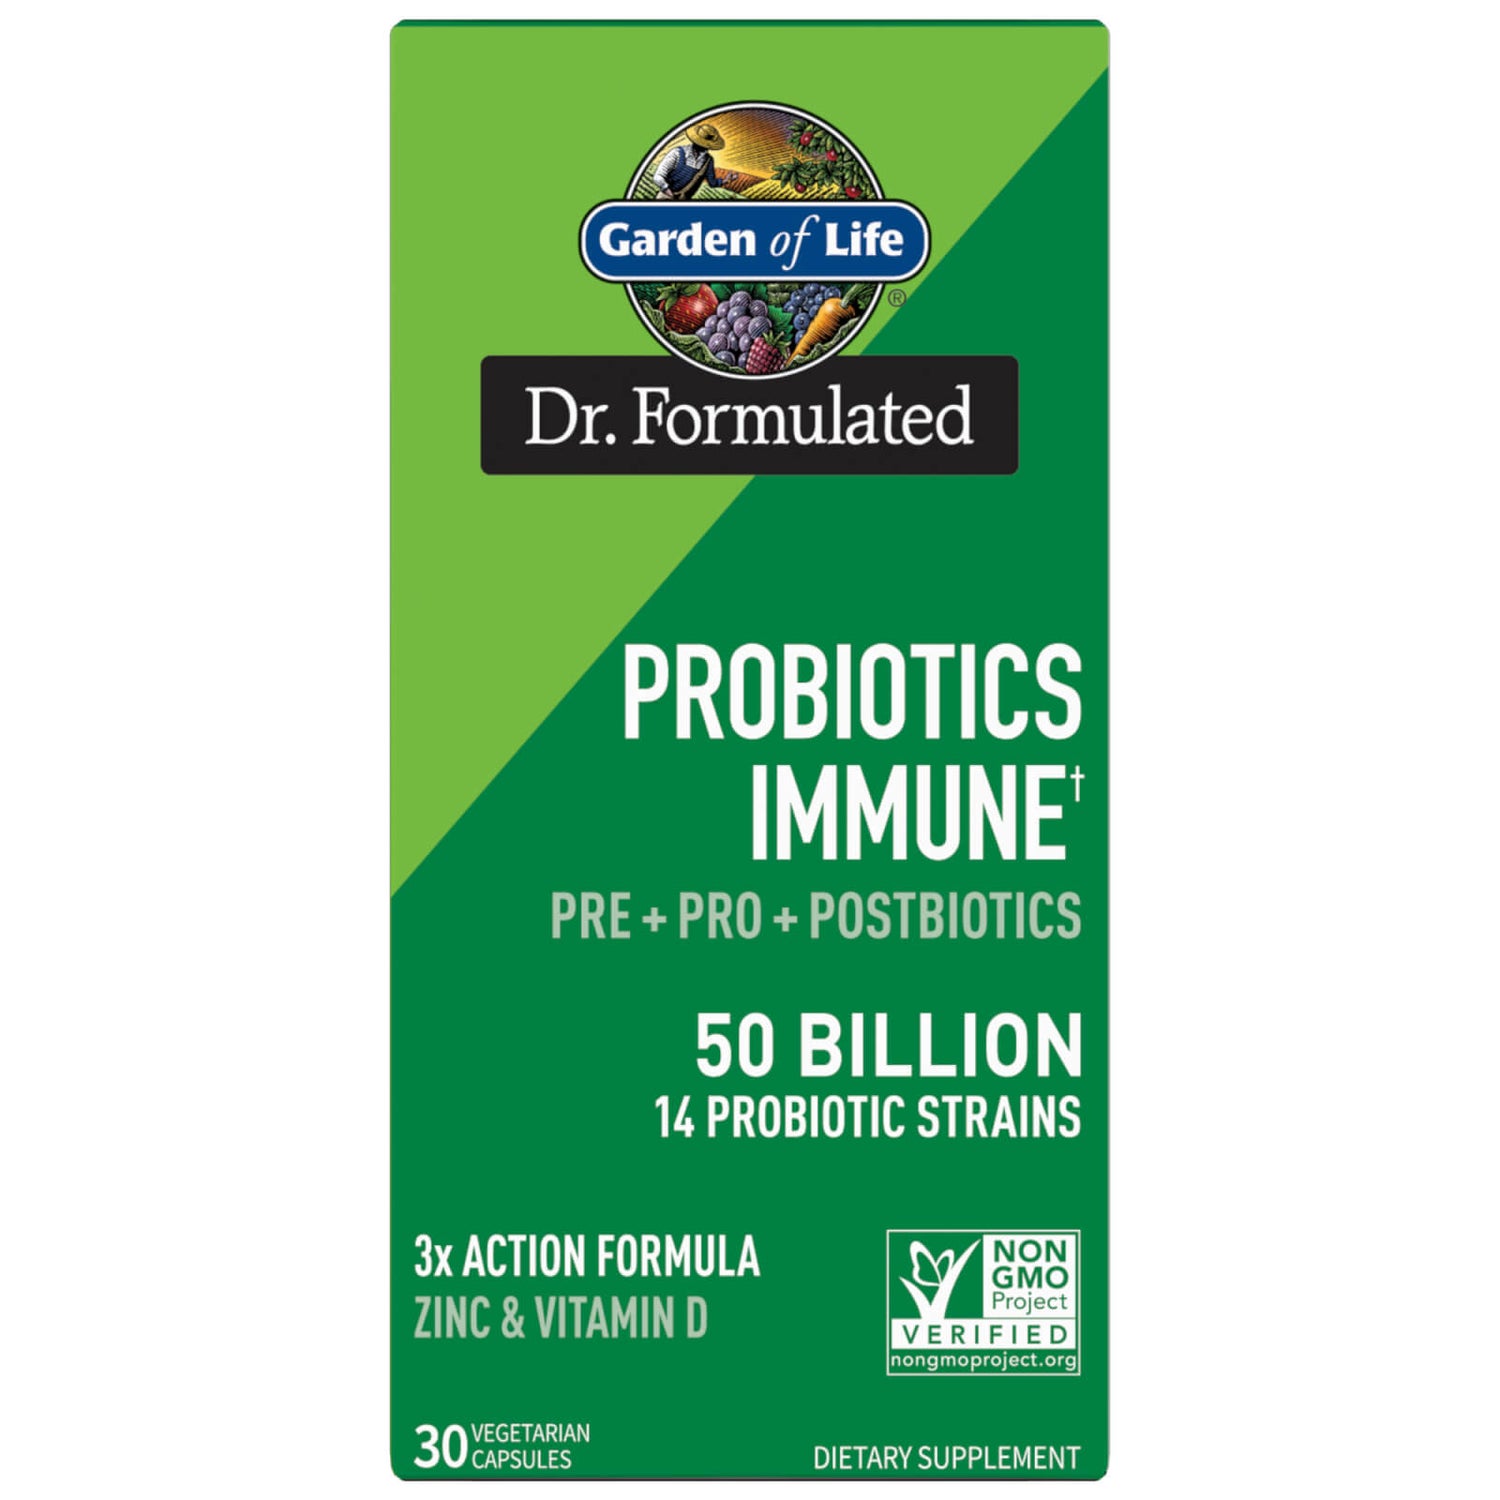 Dr. Formulated Probiotic Verdauung und Immunsystem Pre-, Pro-, und Postbiotika 50B